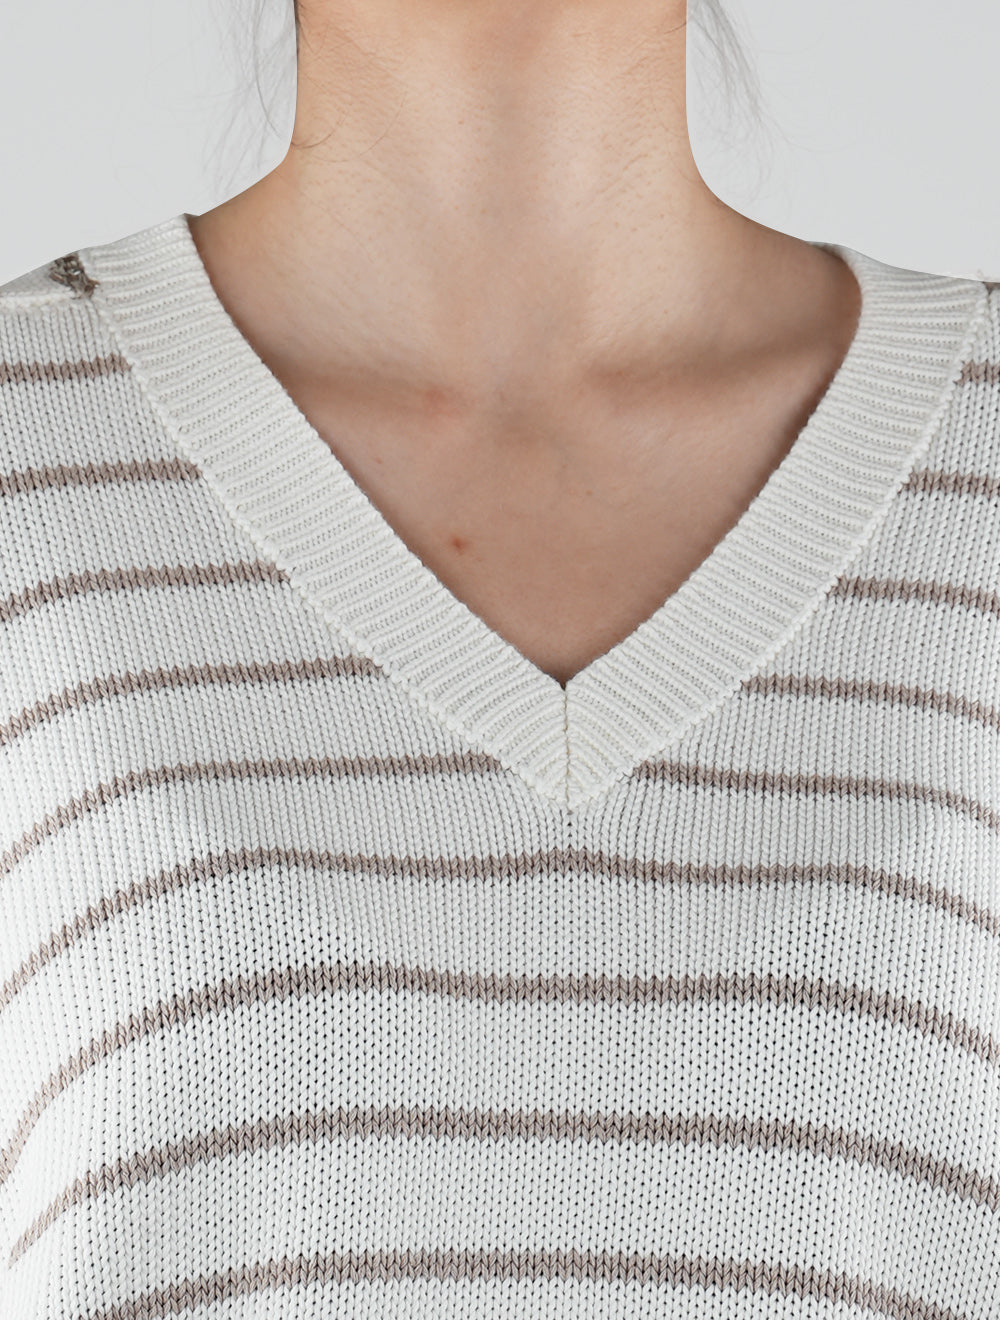 Женский белый бежевый хлопковый свитер Brunello Cucinelli с V-образным вырезом